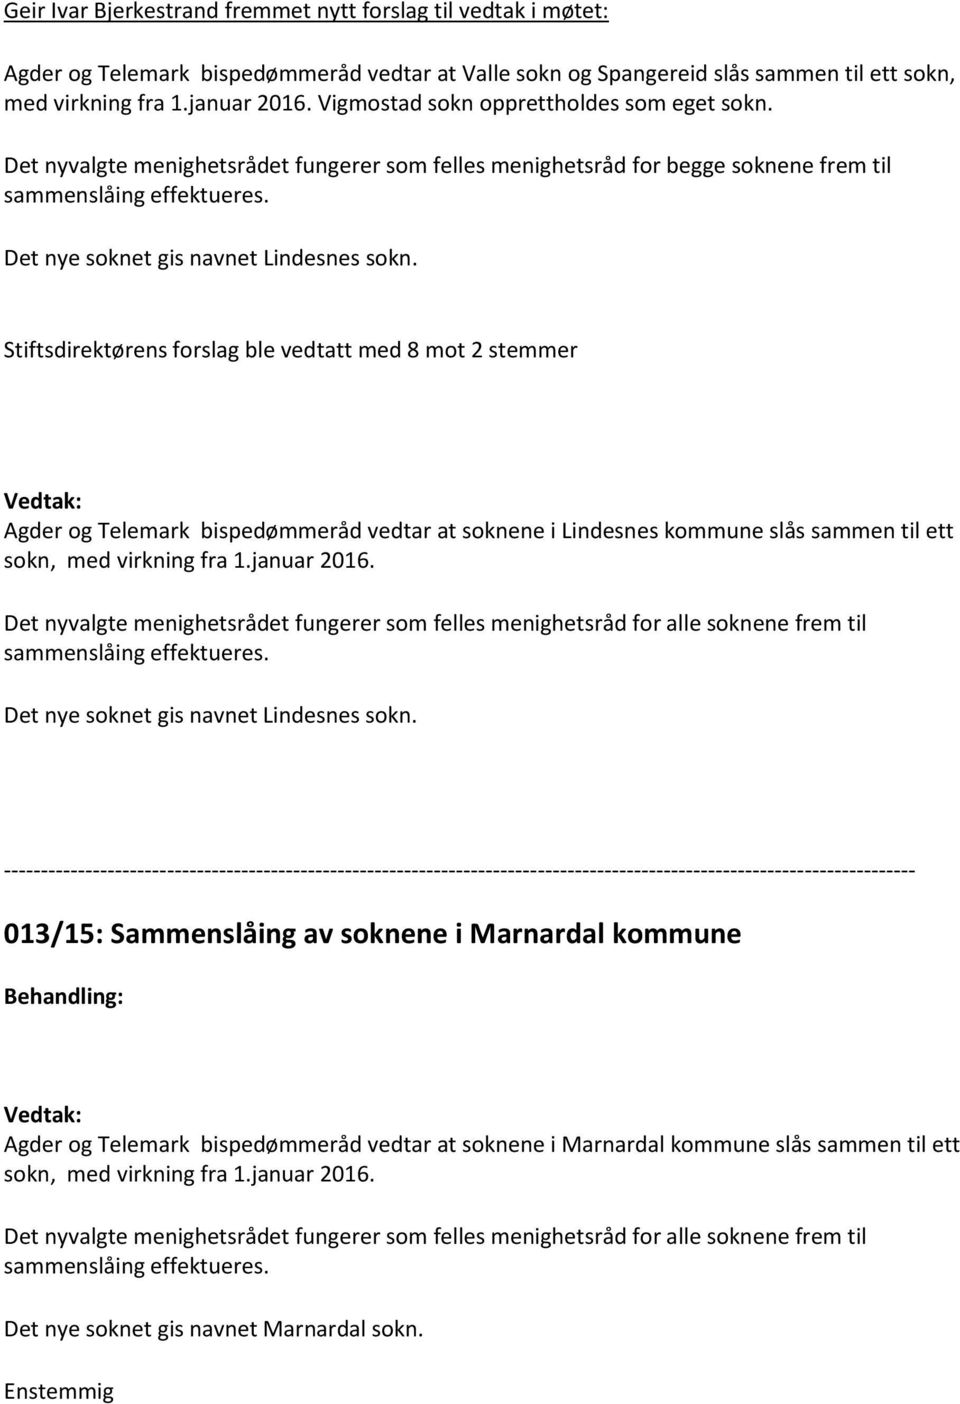 Stiftsdirektørens forslag ble vedtatt med 8 mot 2 stemmer Agder og Telemark bispedømmeråd vedtar at soknene i Lindesnes kommune slås sammen til ett sokn, med virkning fra 1.januar 2016.